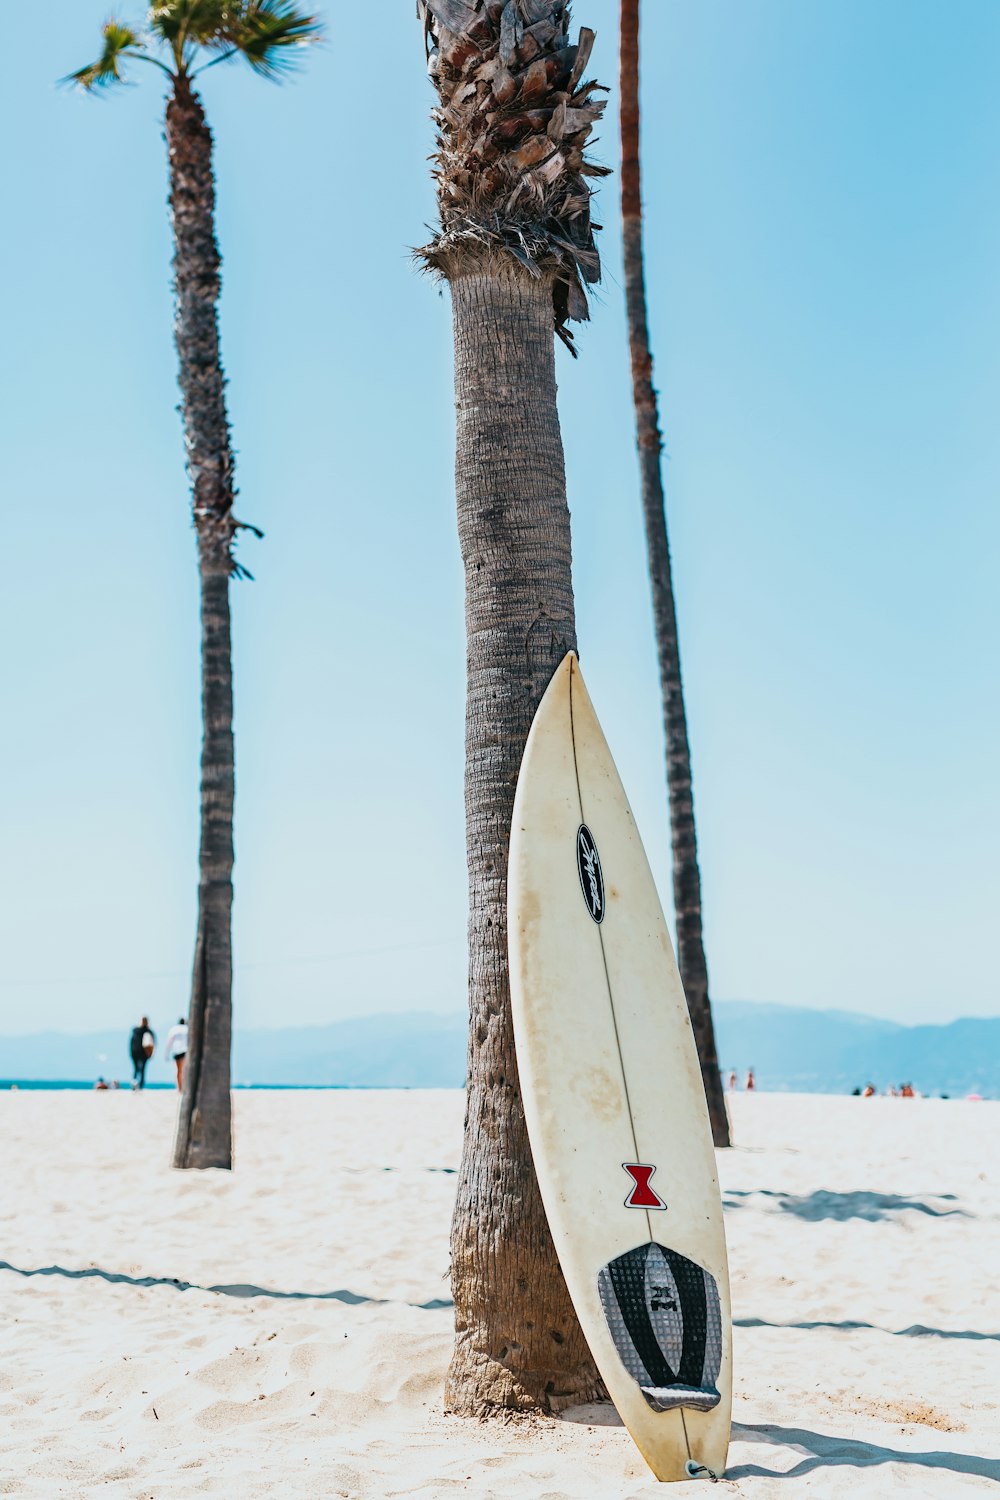 tavola da surf bianca e nera appoggiata alla palma messicana grigia